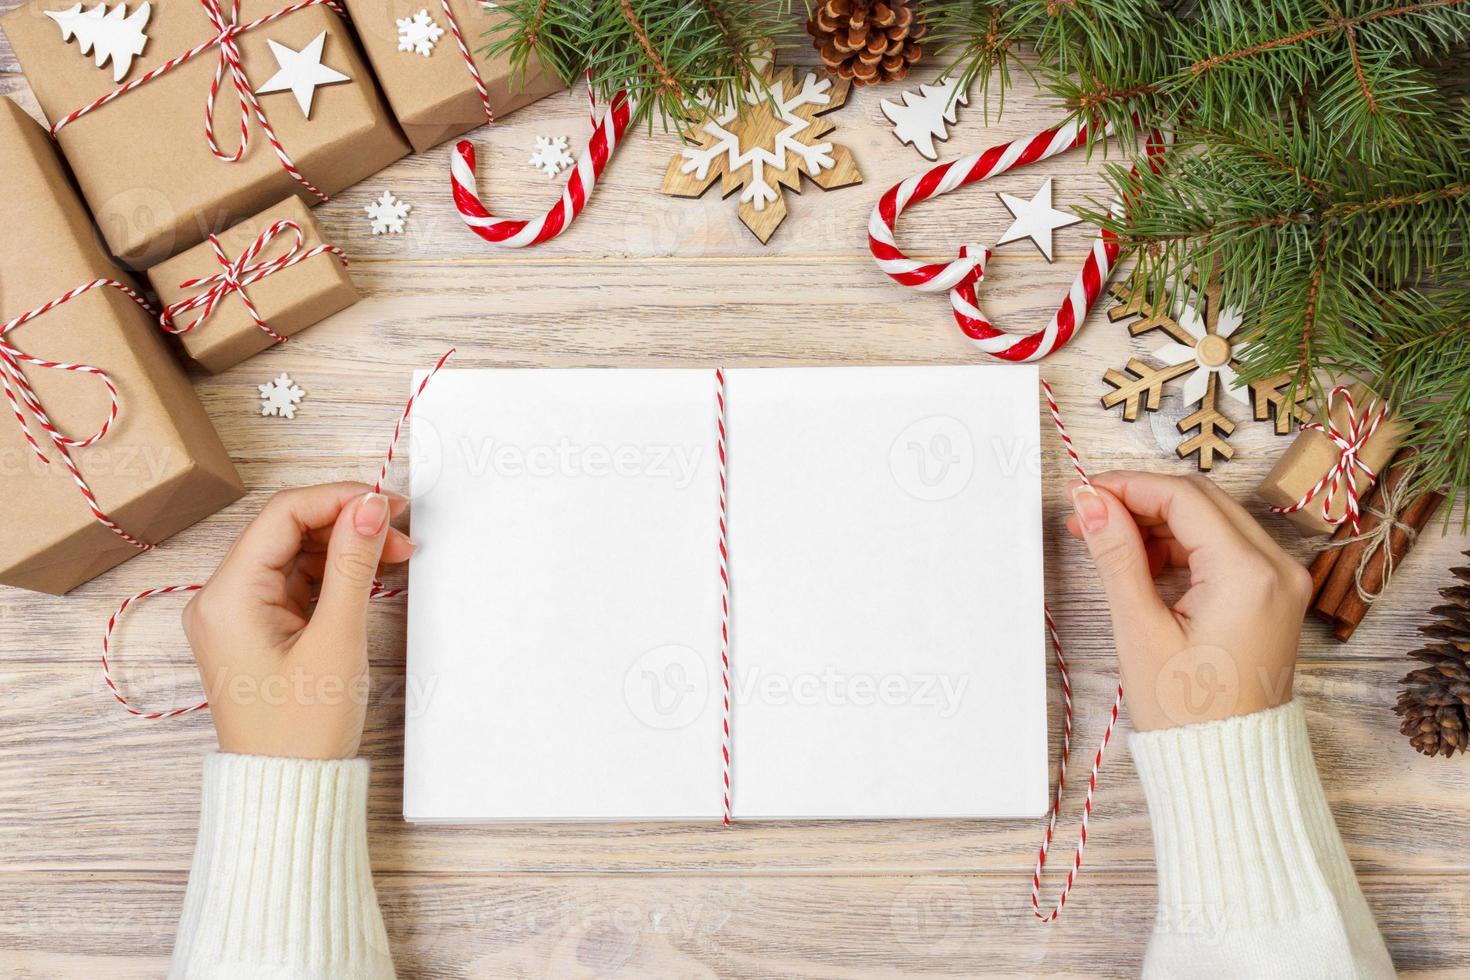 meisje wraps Kerstmis brieven in envelop, kinderen de kerstman claus brief in envelop, Kerstmis achtergrond foto